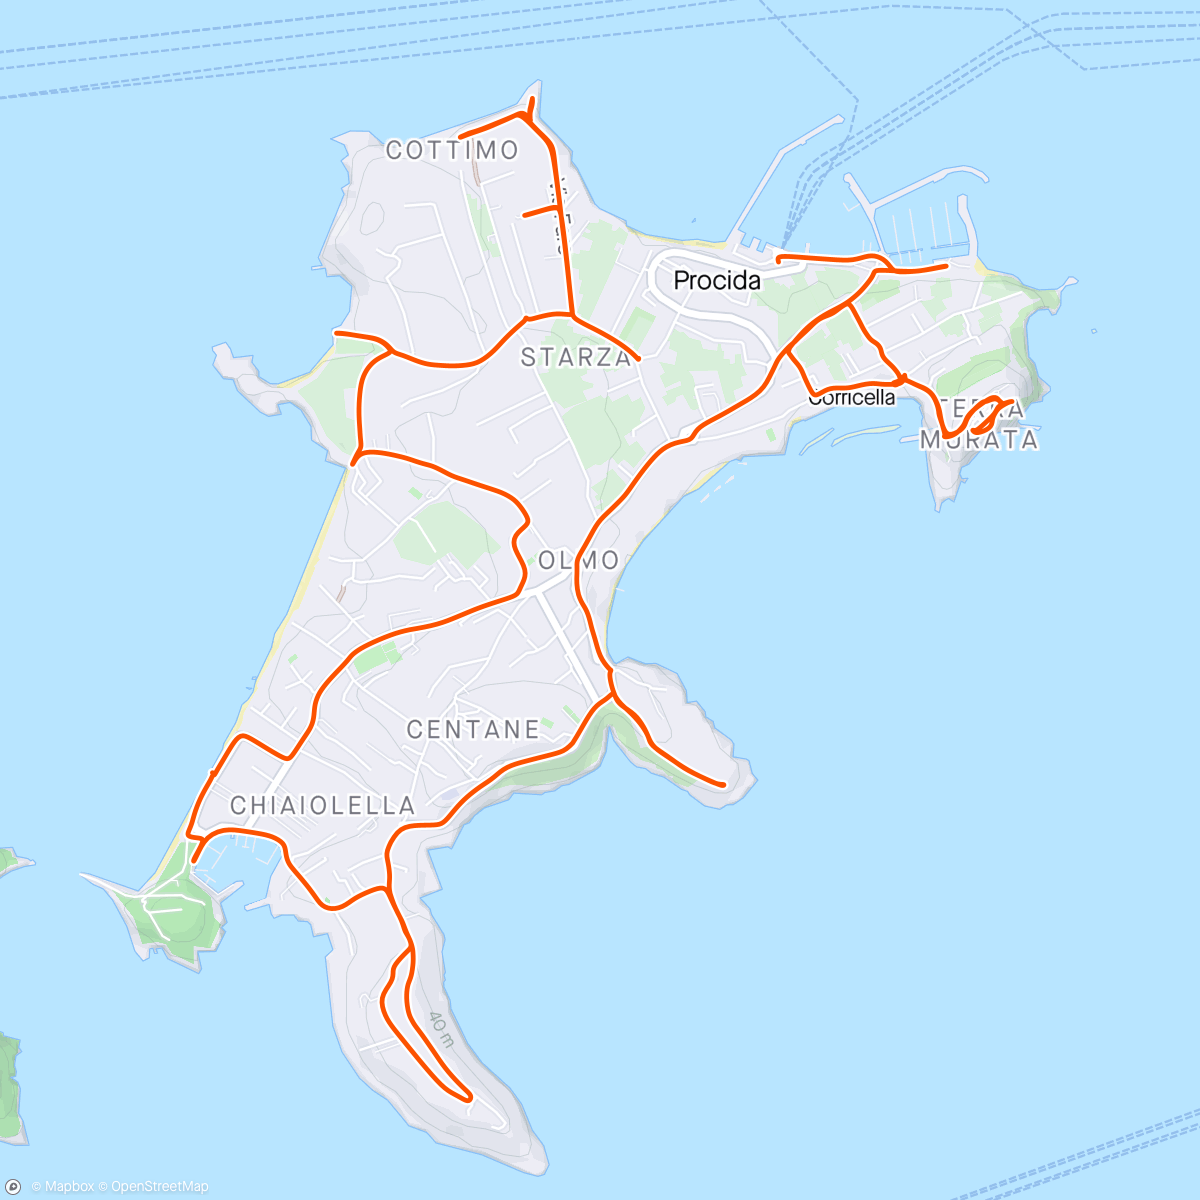 「Sortie en vélo électrique Île de Procida」活動的地圖